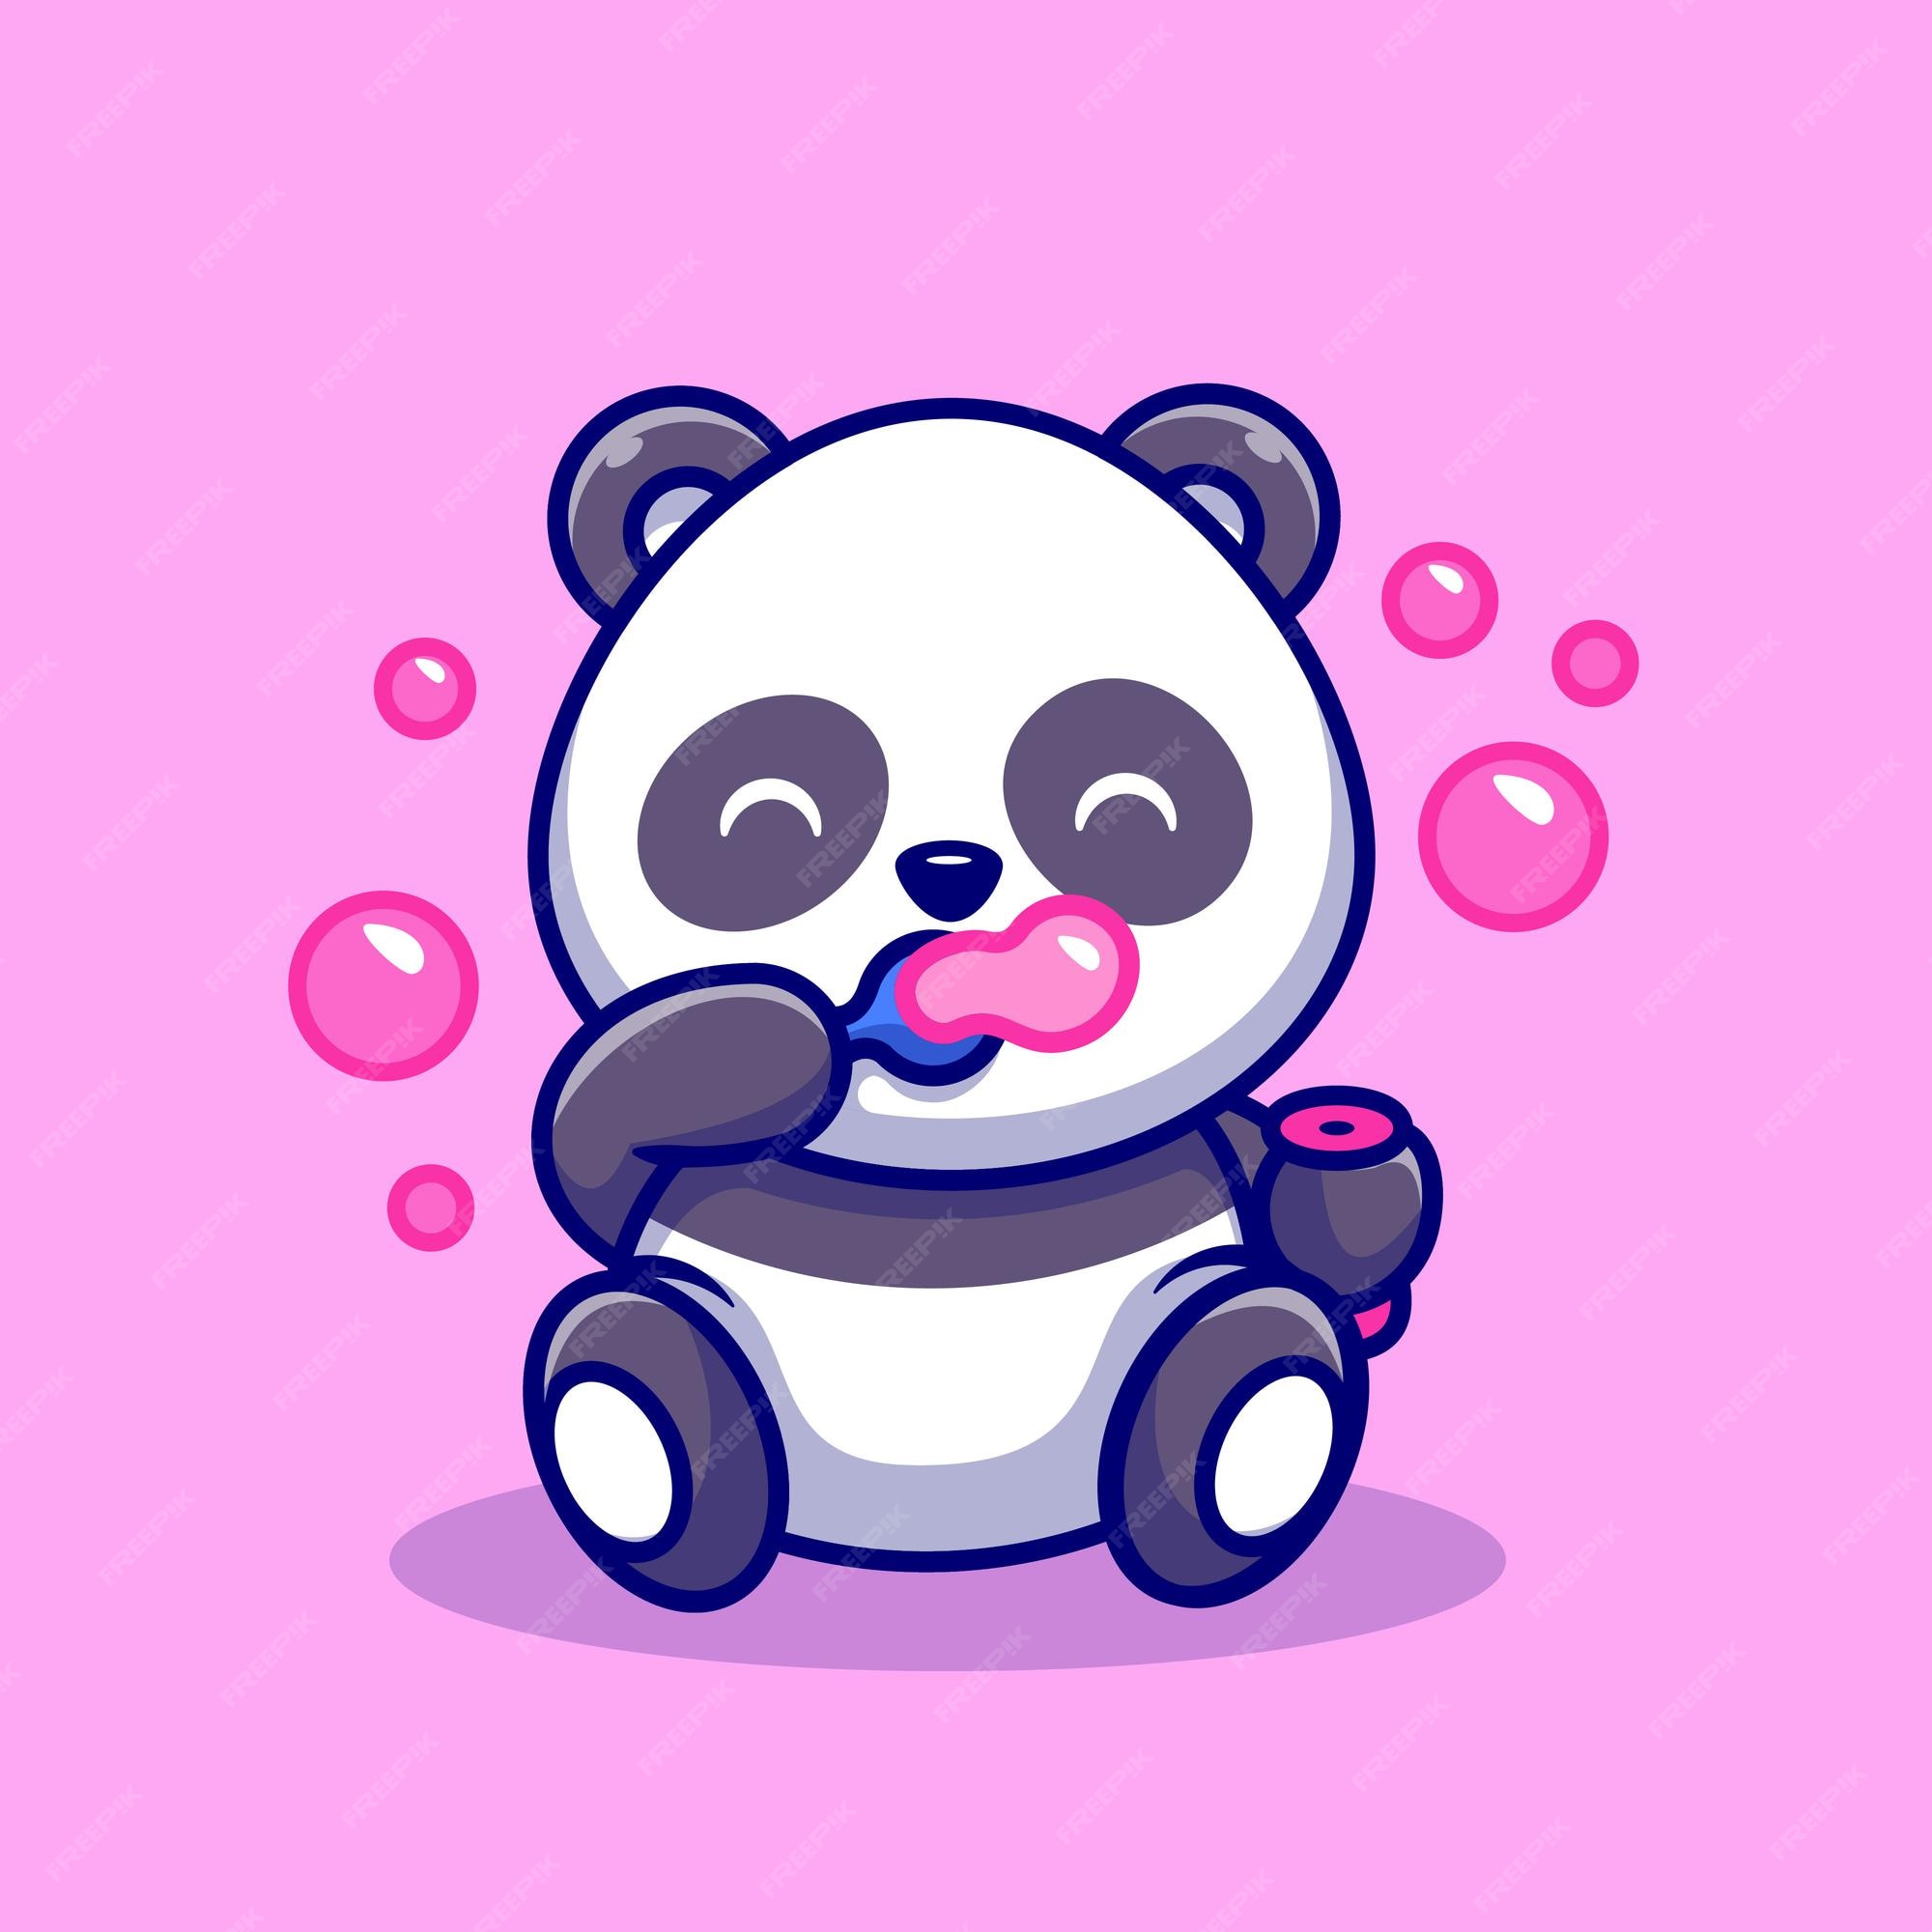 Panda Desenho Imagens – Download Grátis no Freepik